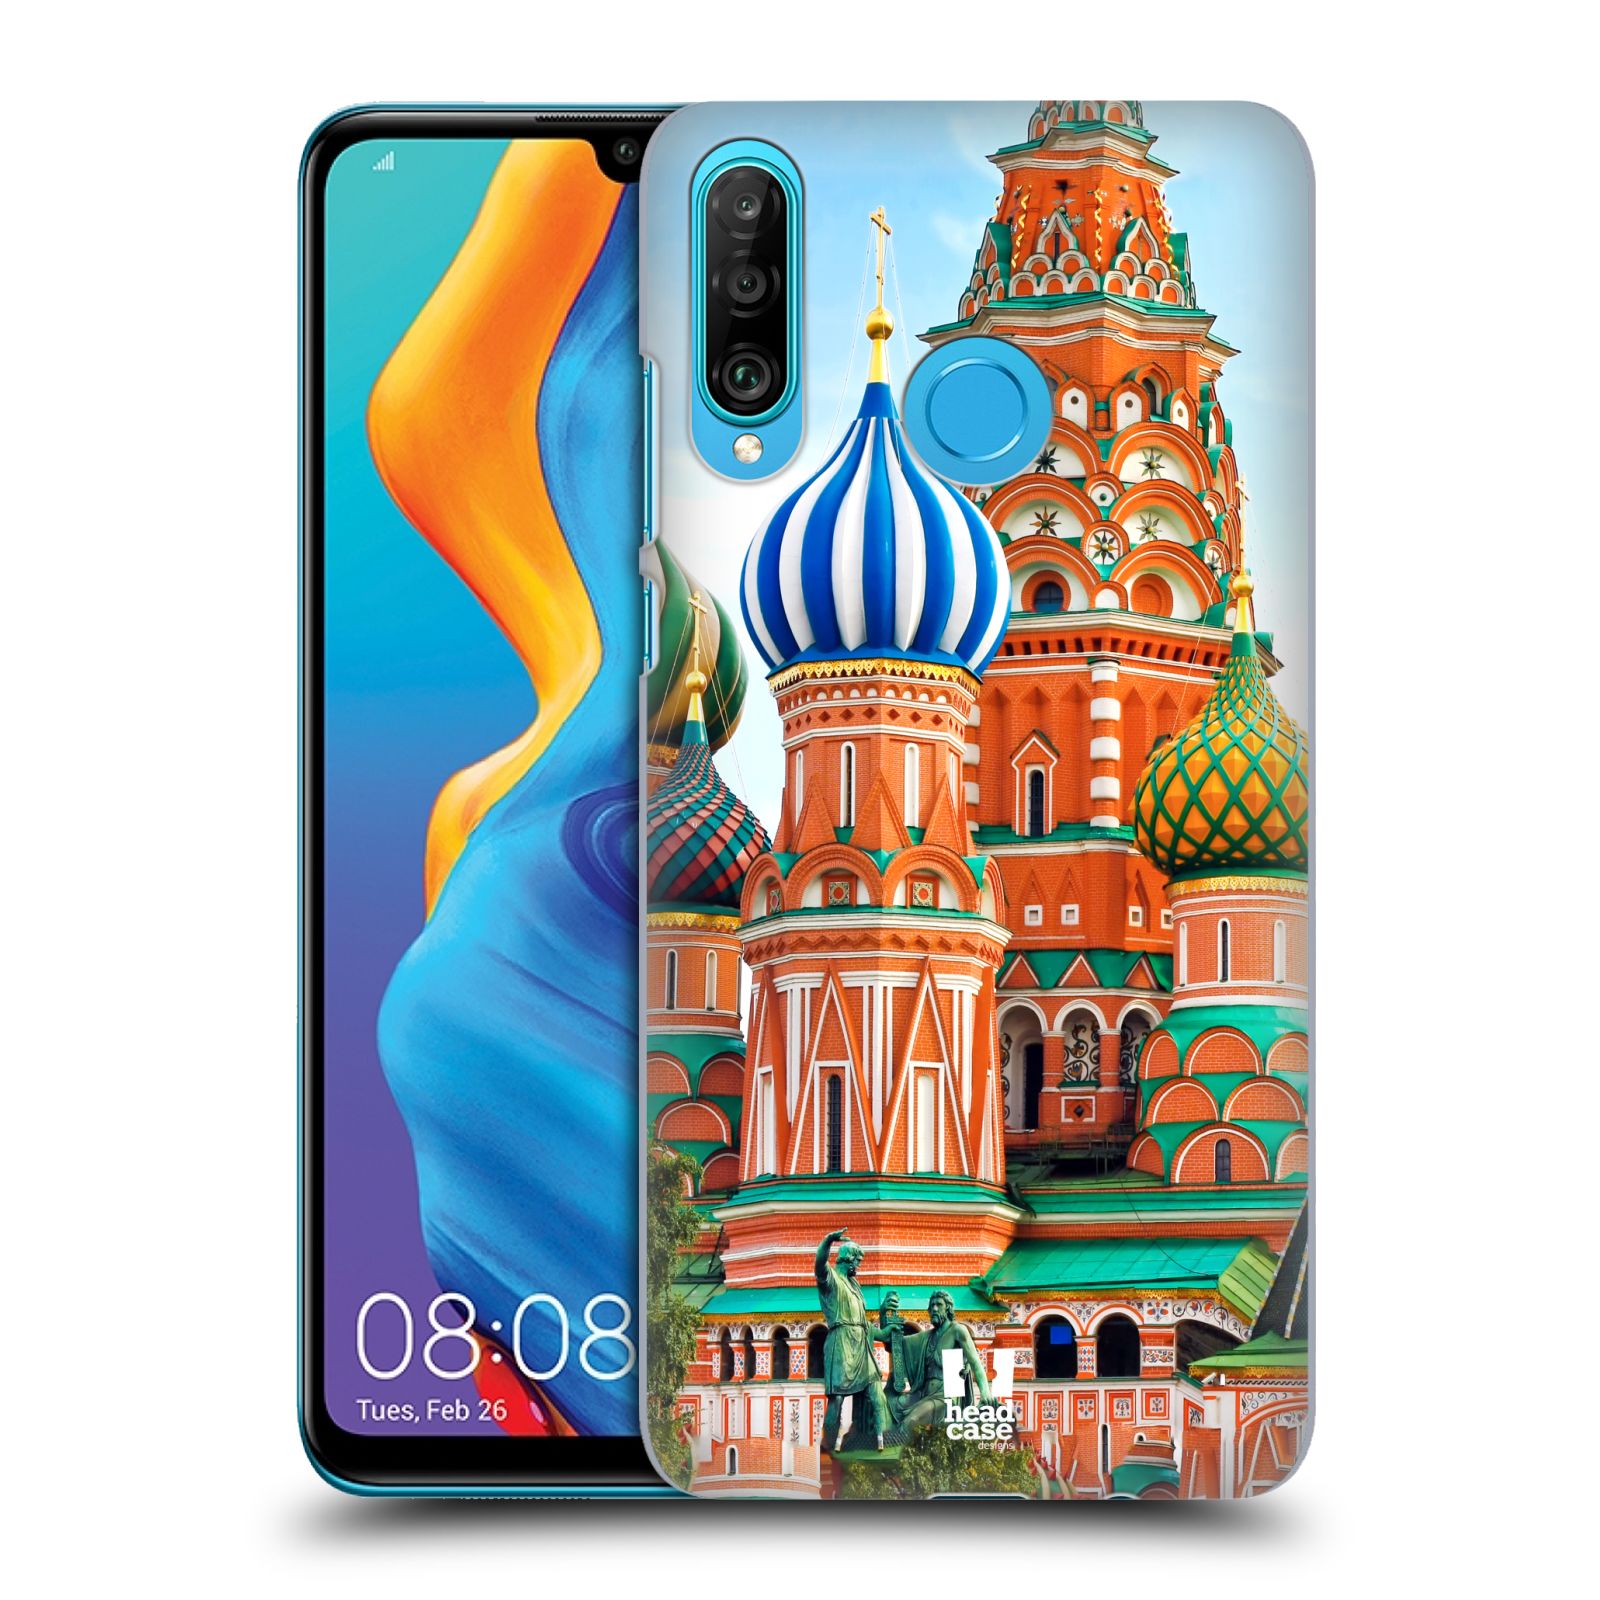 Pouzdro na mobil Huawei P30 LITE - HEAD CASE - vzor Města foto náměstí RUSKO,MOSKVA, RUDÉ NÁMĚSTÍ